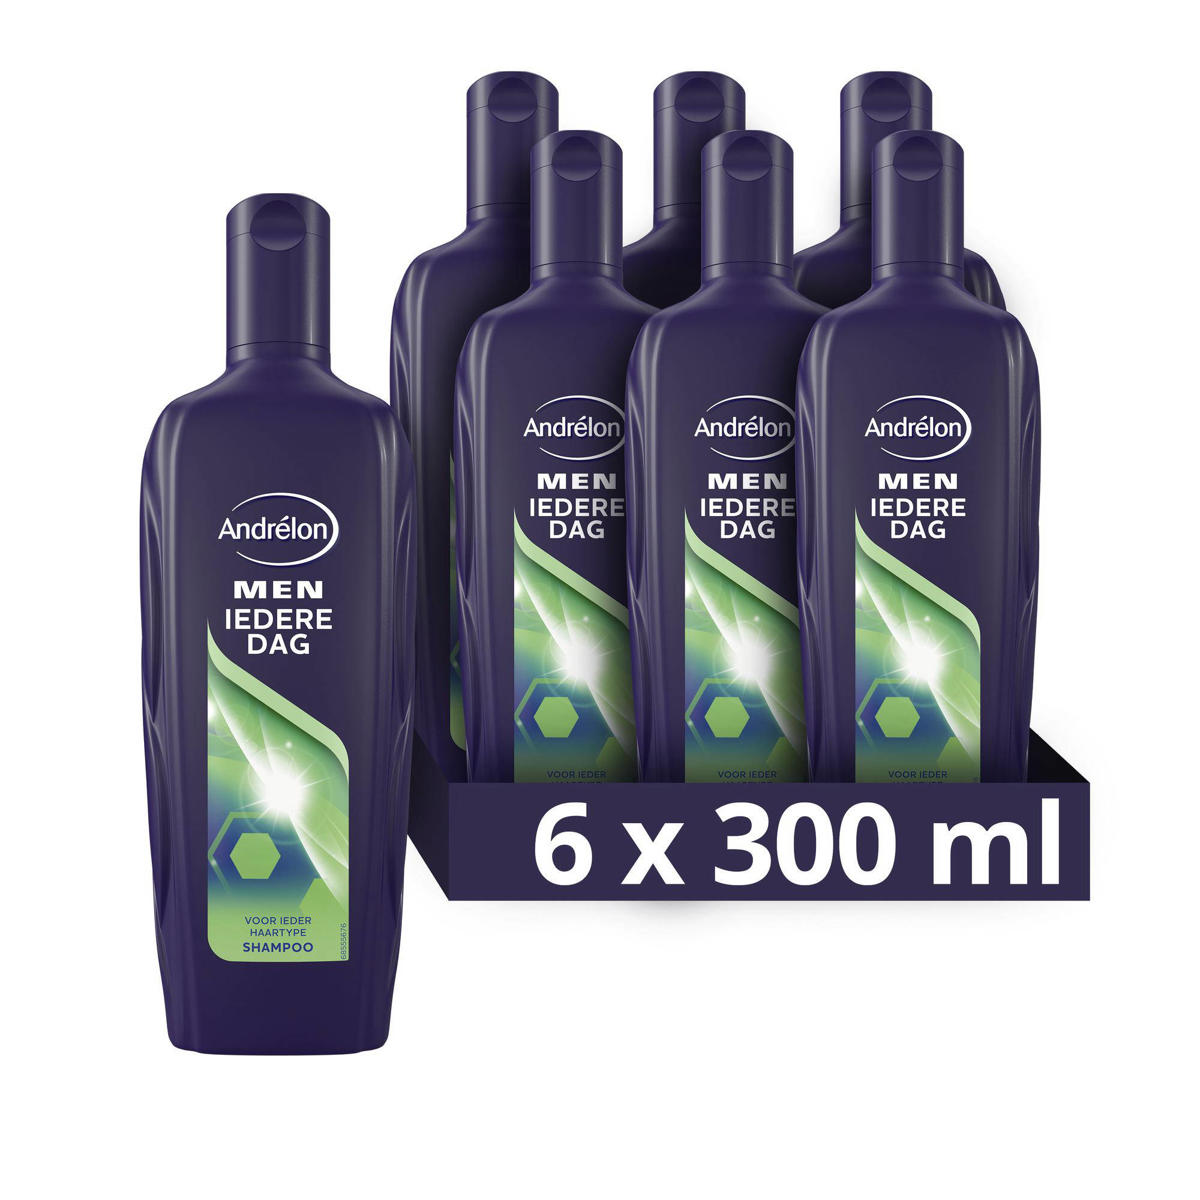 ik heb honger Kip strelen Andrélon Andrélon Men Iedere Dag shampoo - 6 x 300 ml - voordeelverpakking  | wehkamp